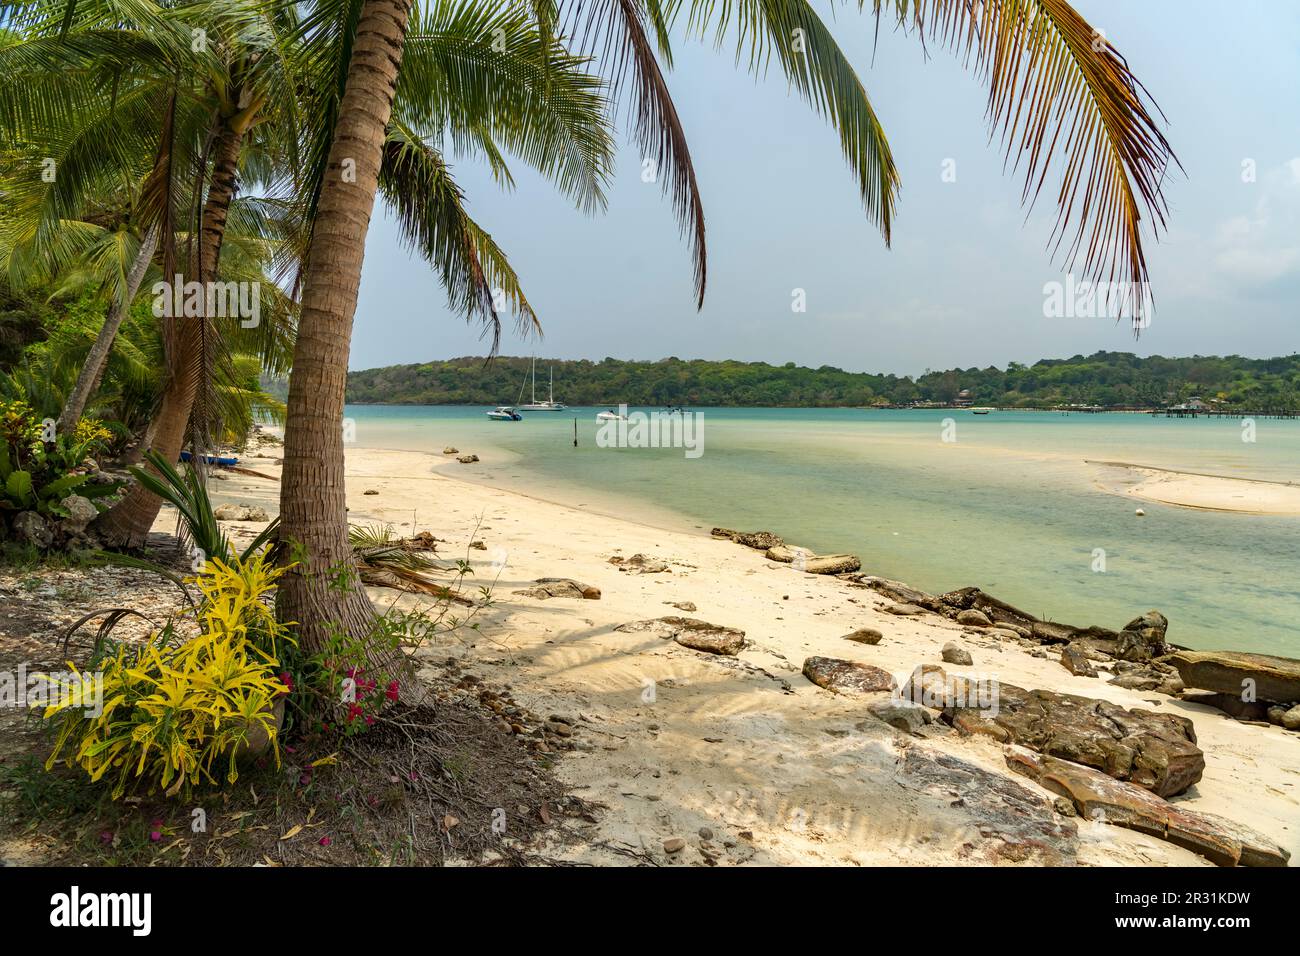 Strand und Bucht von Bang Bao, Insel Ko Kut oder Koh Kood im Golf von Thailand, Asien   |   Bang Bao Beach and bay, Ko Kut or Koh Kood, island in the Stock Photo